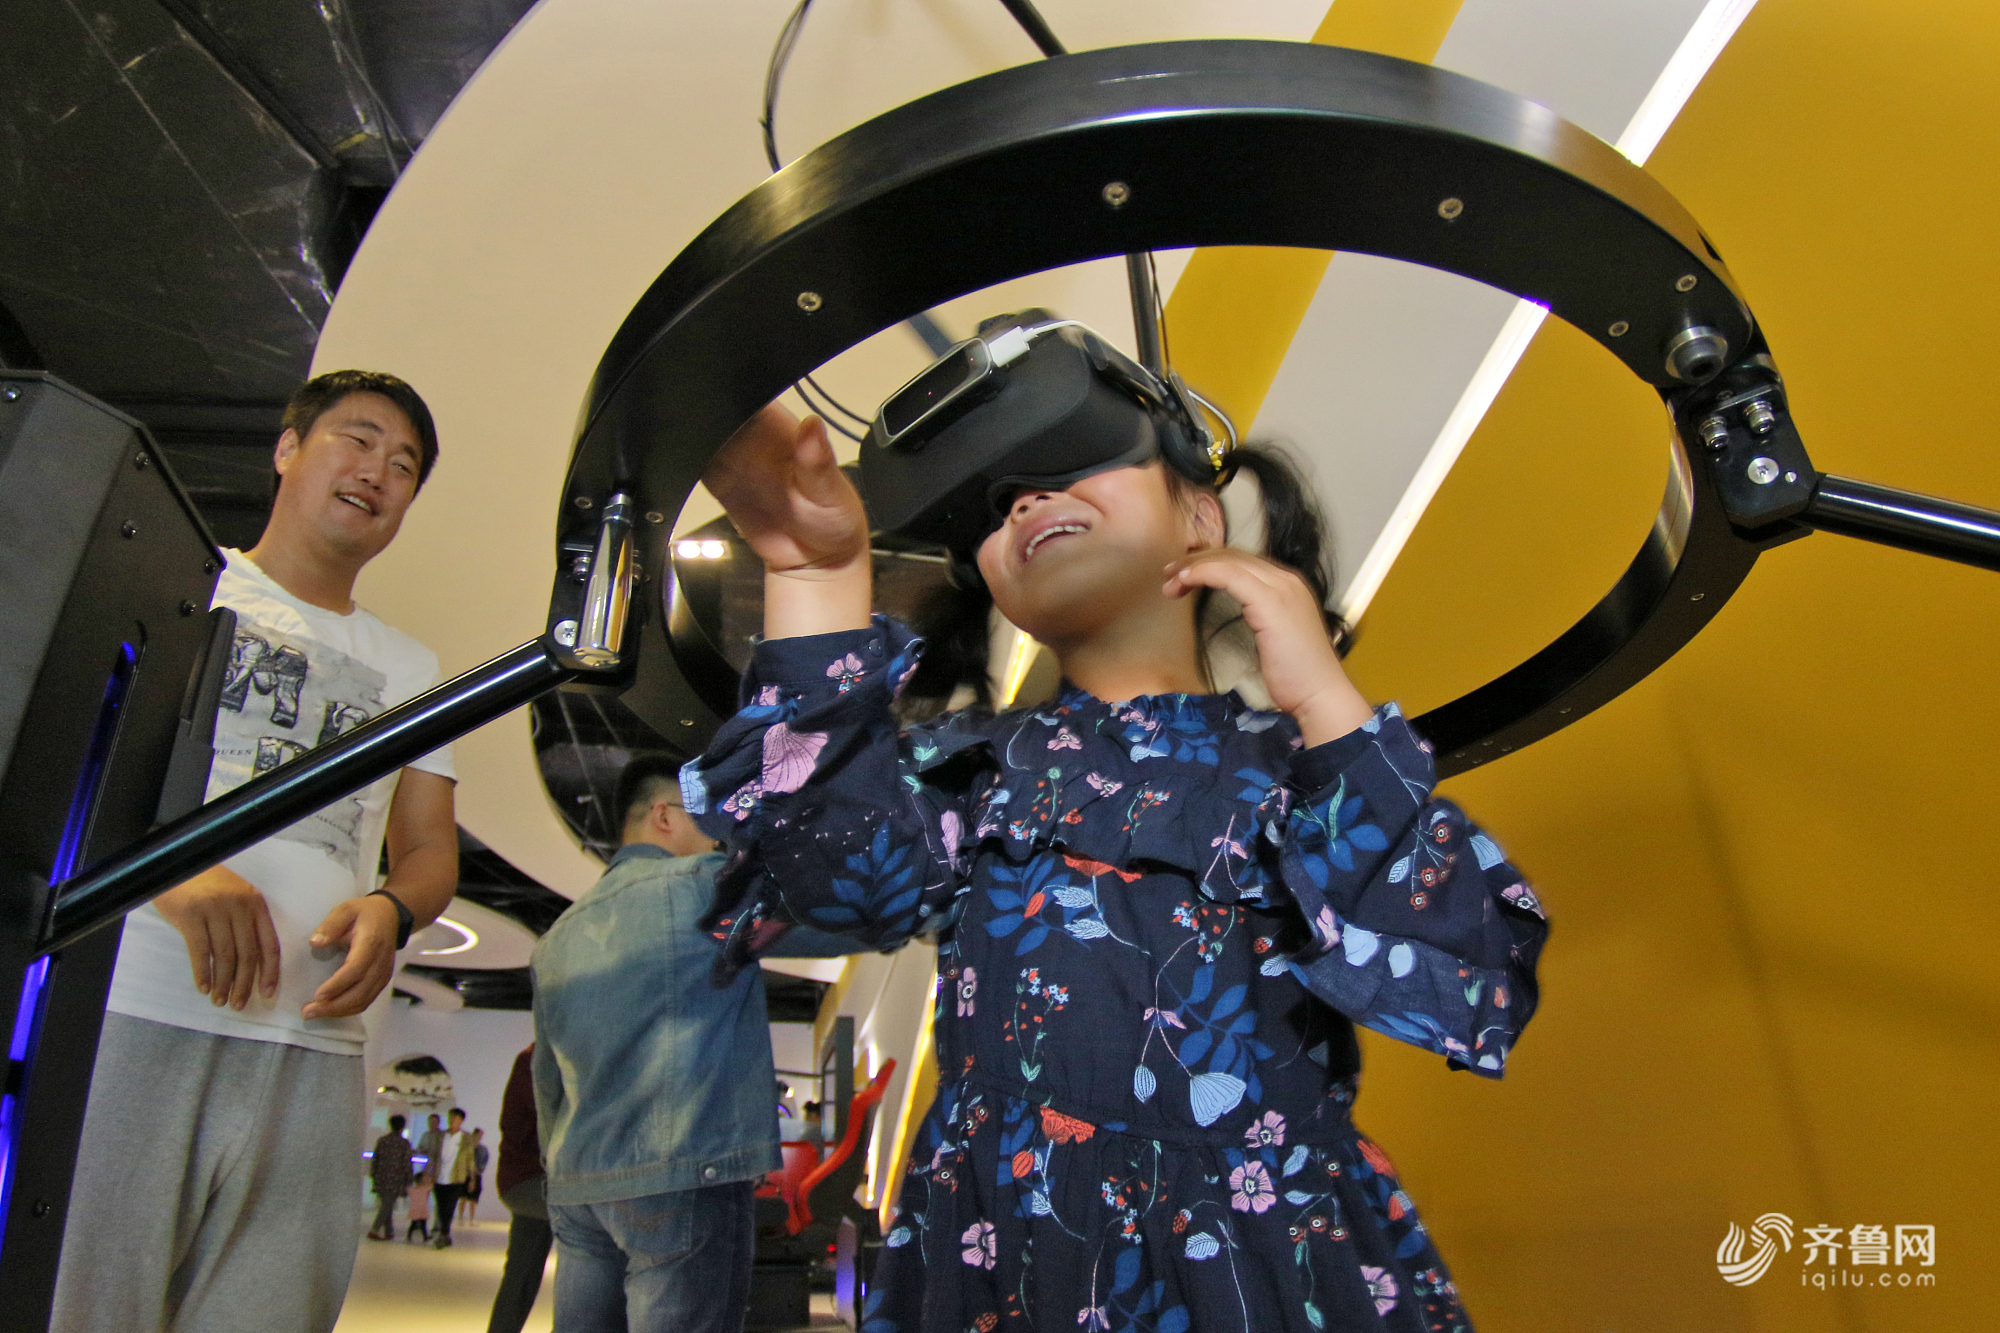 烟台市民VR体验馆里乐享假期 体验虚拟现实世界